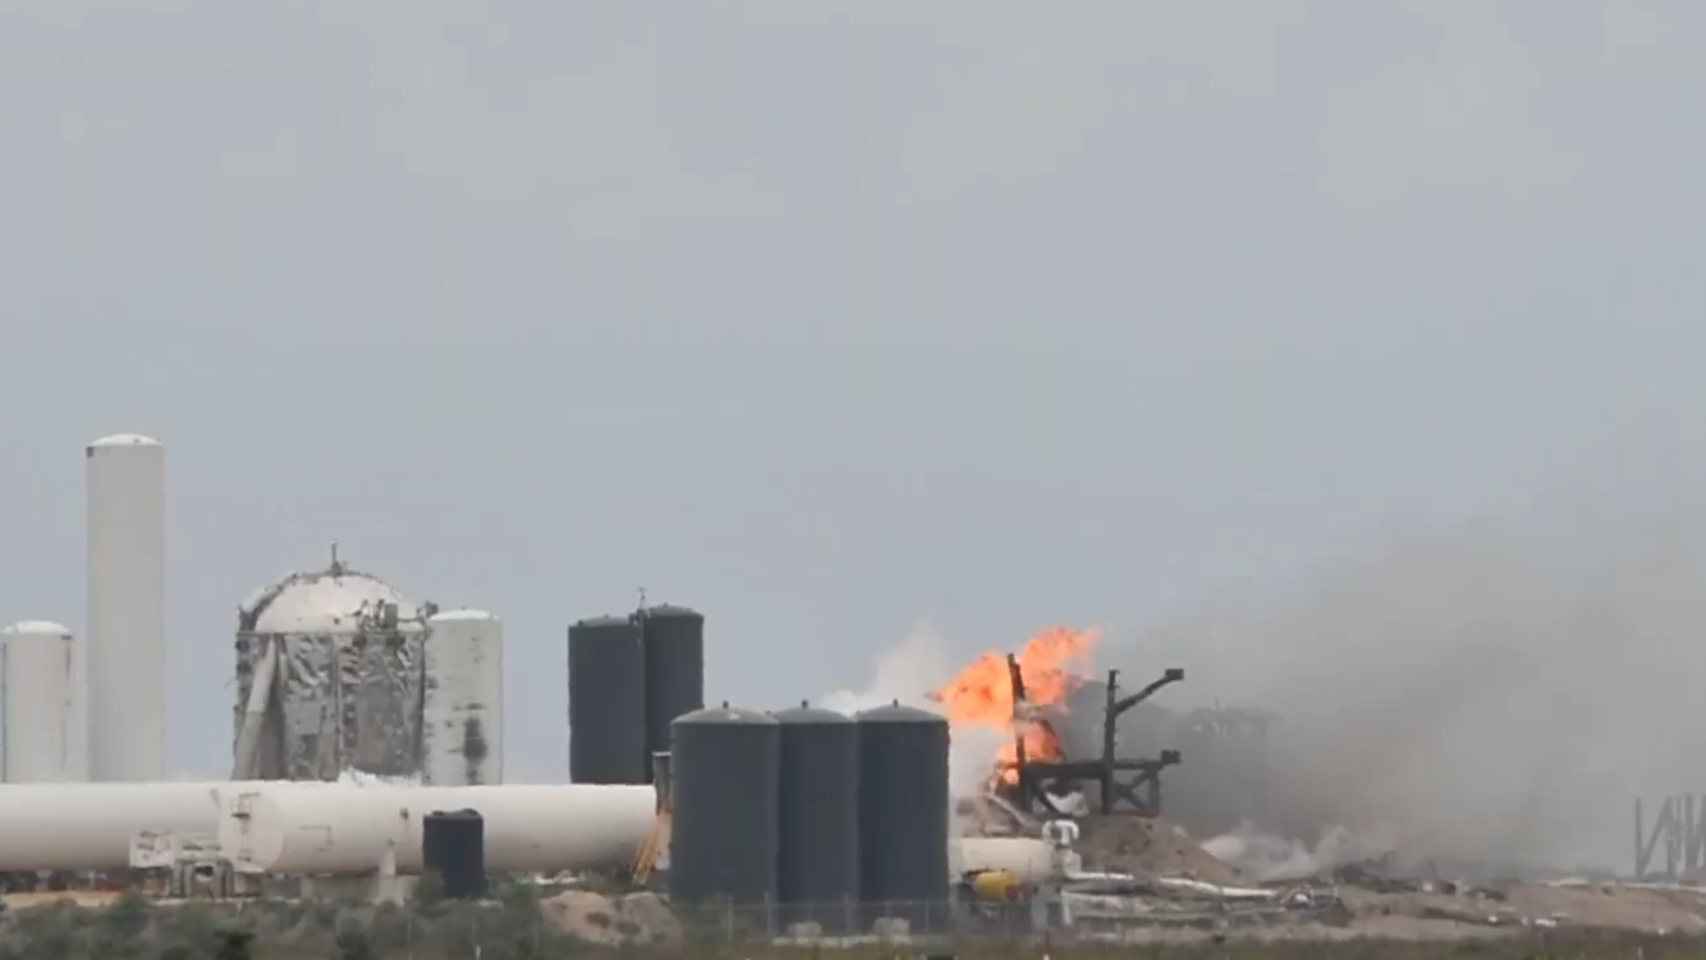 Estado de la plataforma después de la explosión del cohete de SpaceX